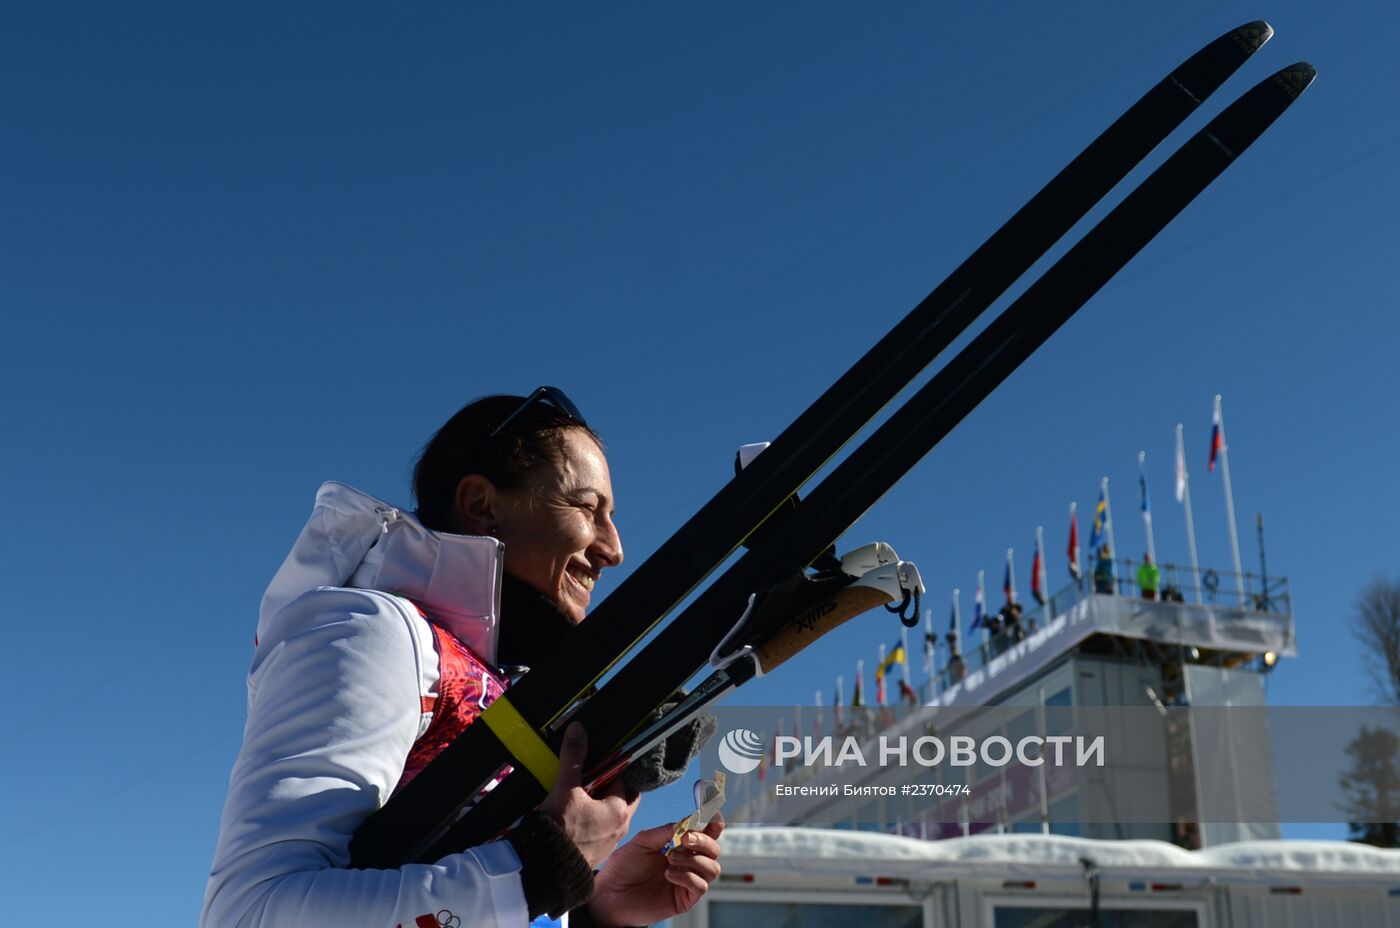 Олимпиада 2014. Лыжные гонки. Женщины. Индивидуальная гонка